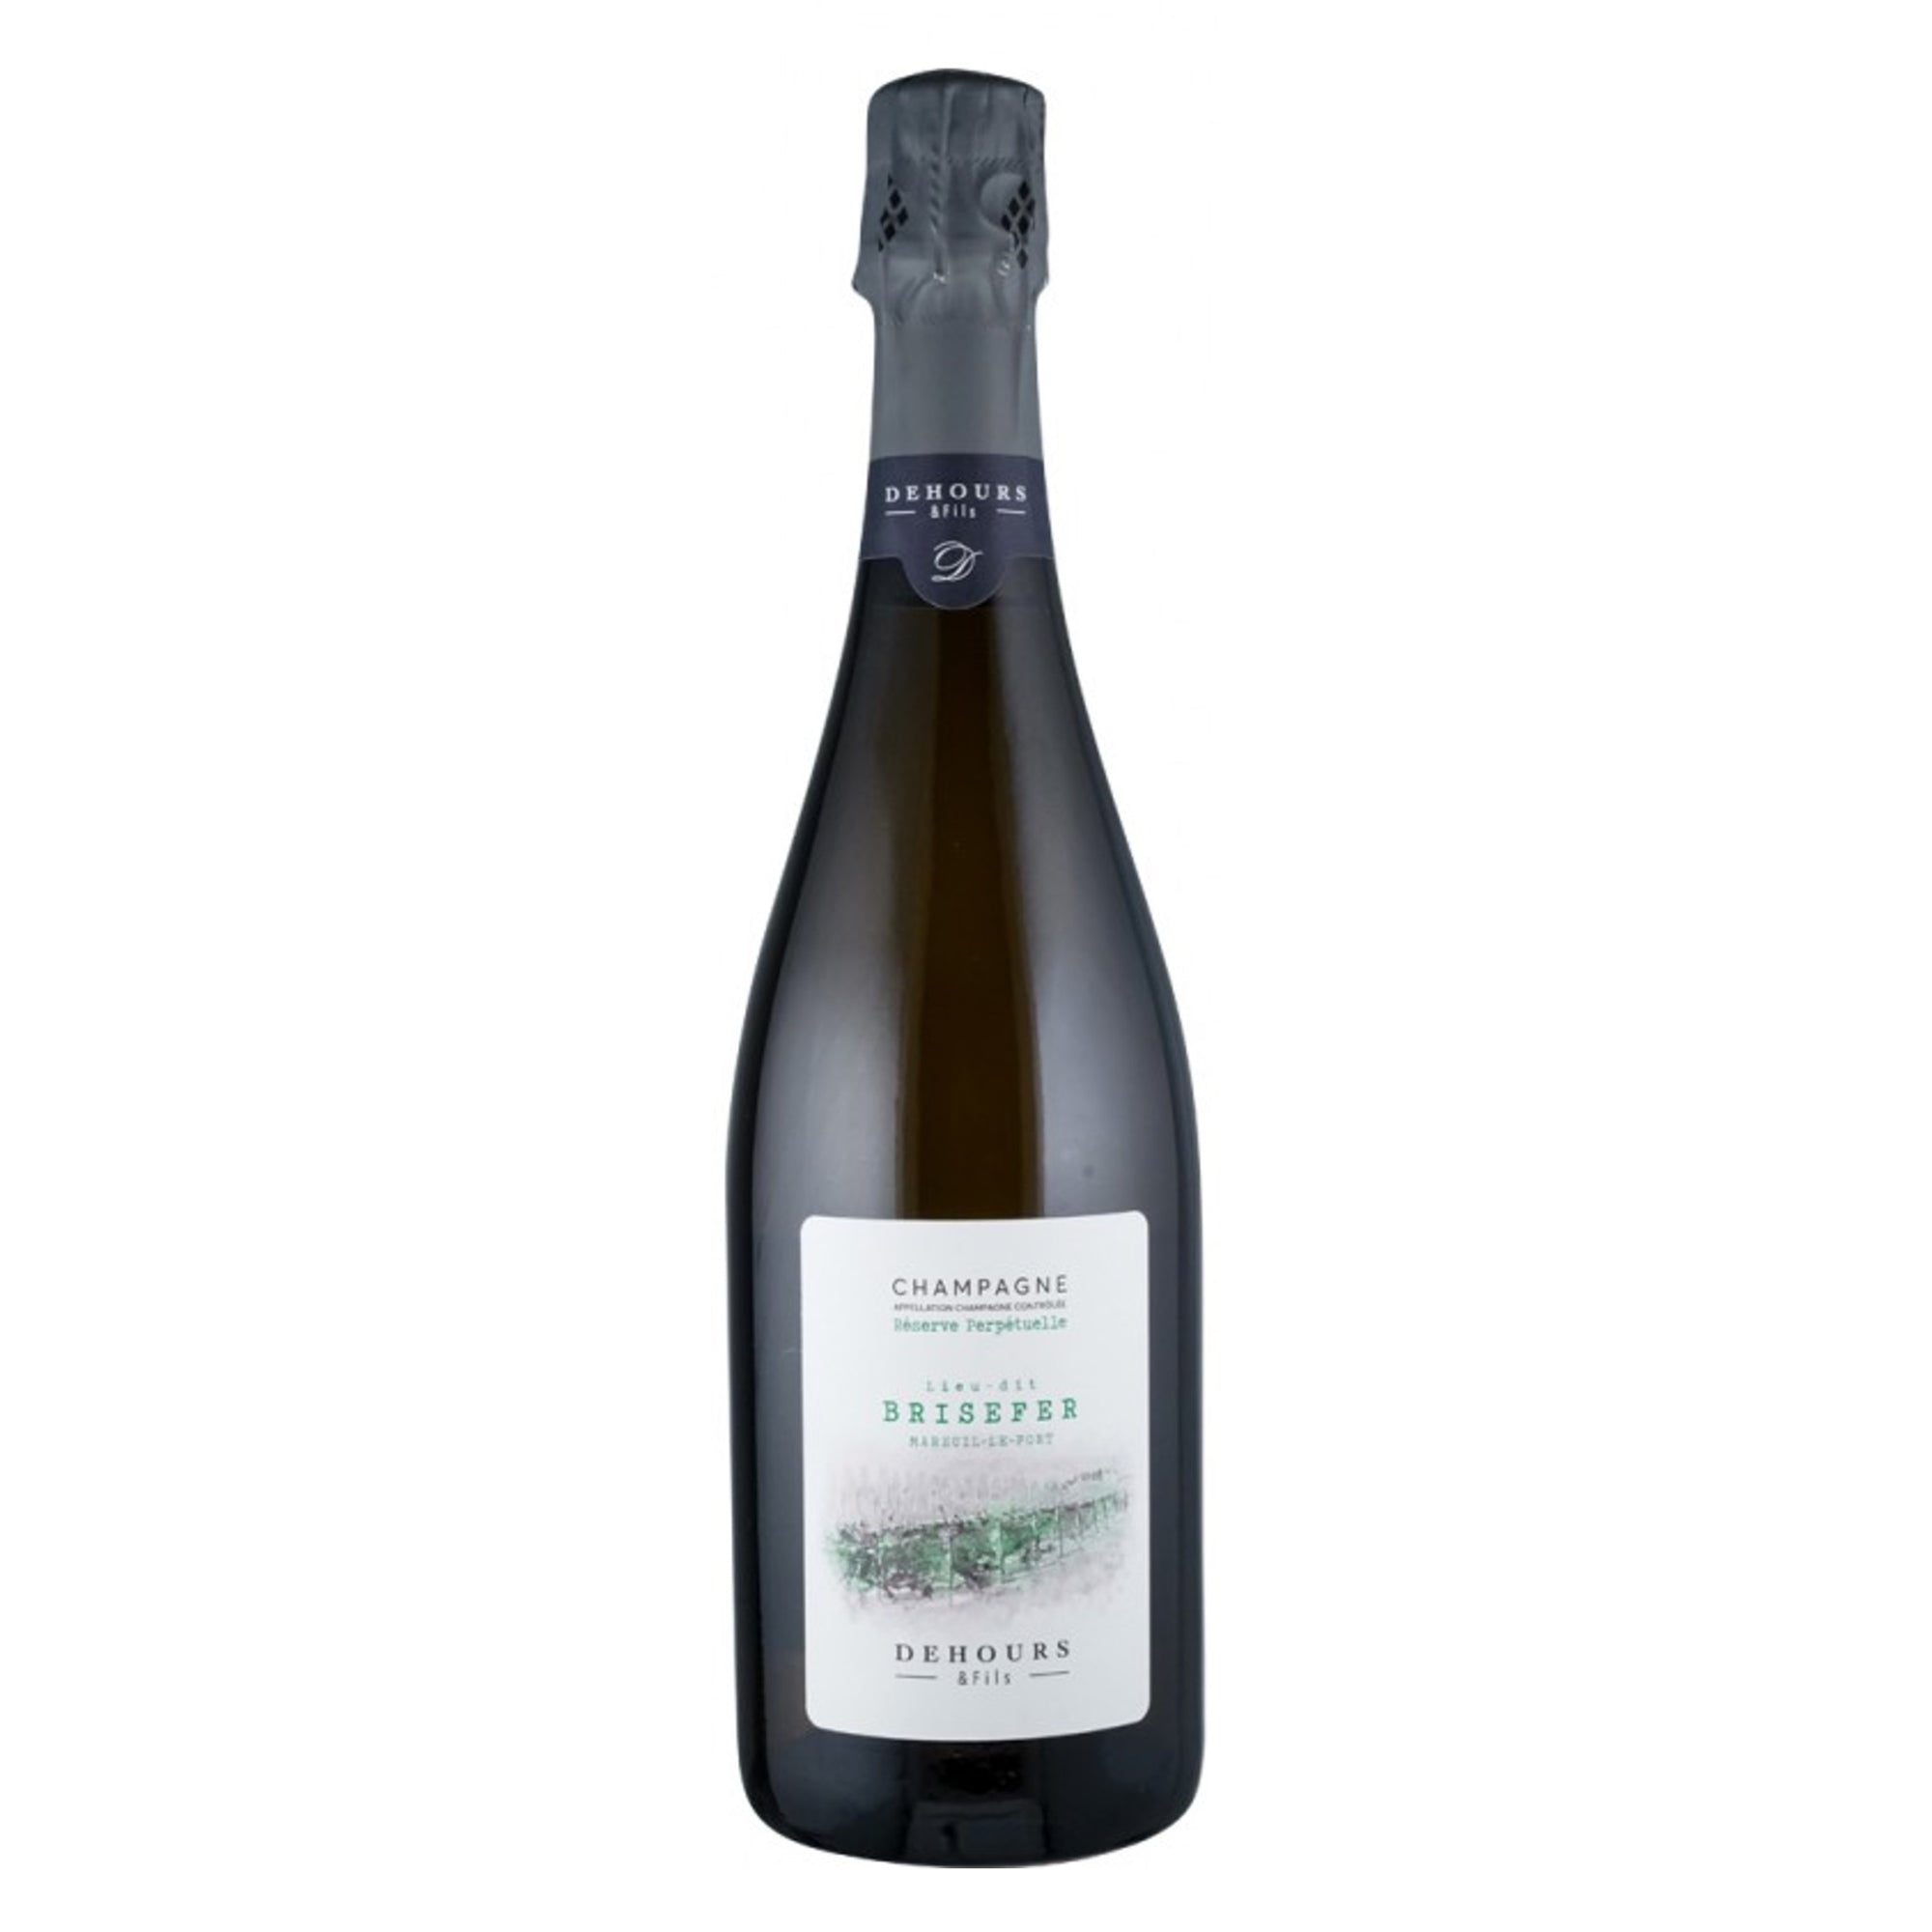 DEHOURS & FILS Champagne Extra Brut "Brisefer" Reserve Perpetuelle NV